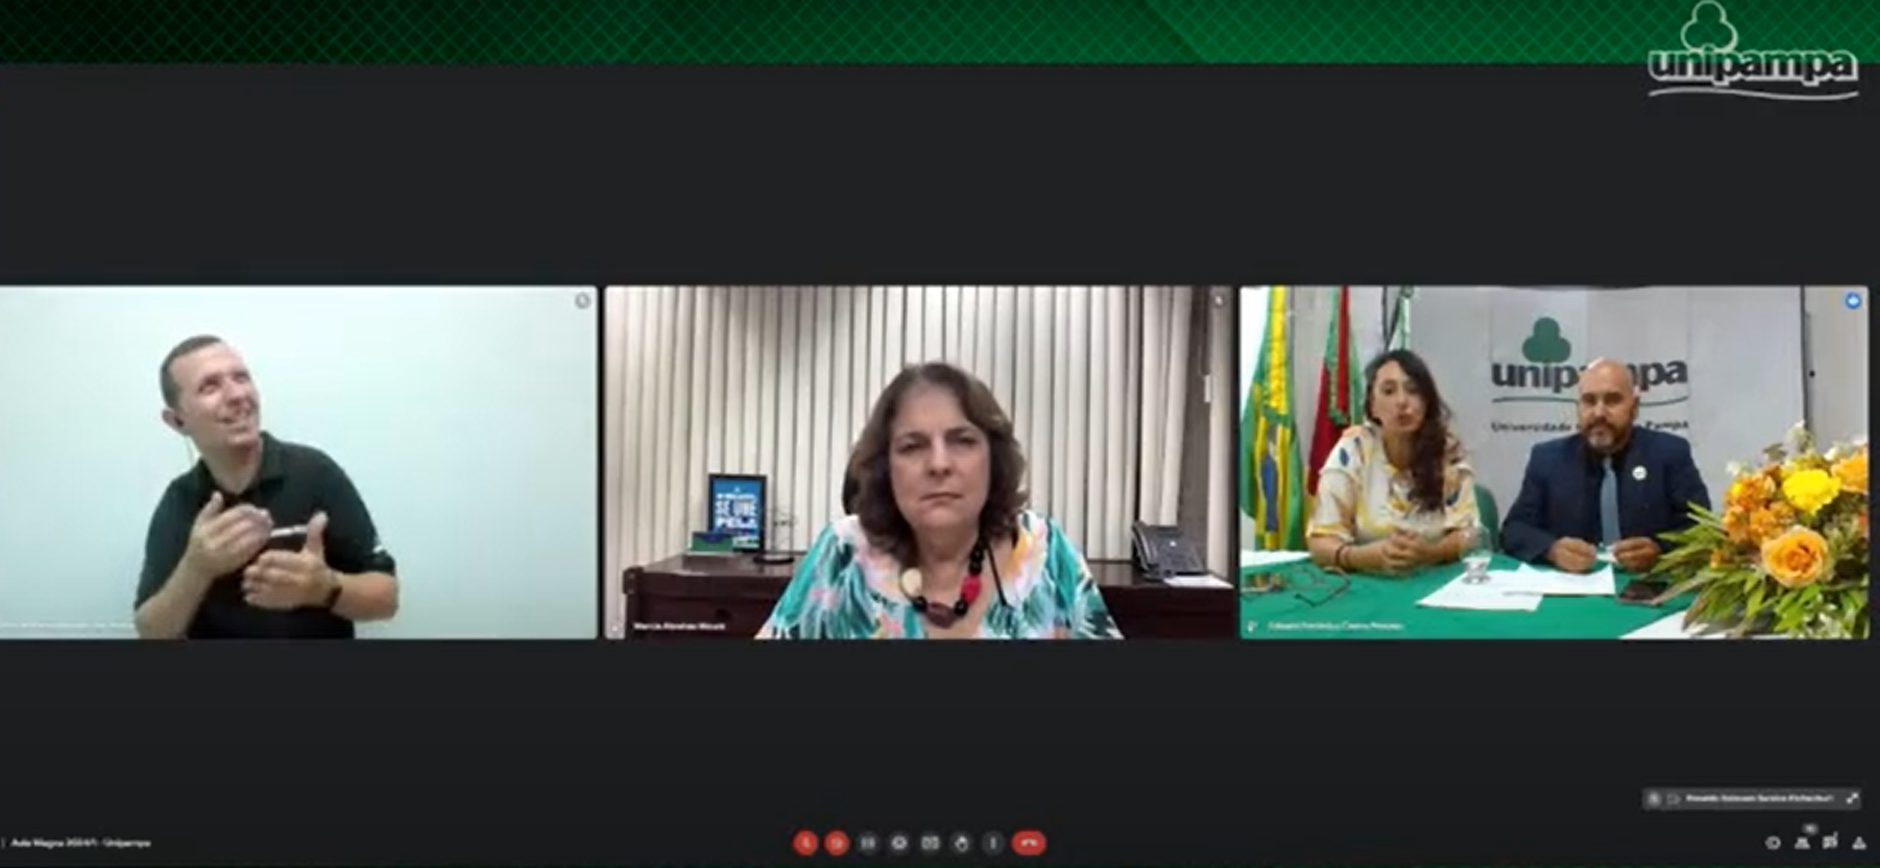 A professora e reitora da Universidade (UnB), Márcia Abrahão Moura, explanou sobre “Desafios e avanços na universidade pública”